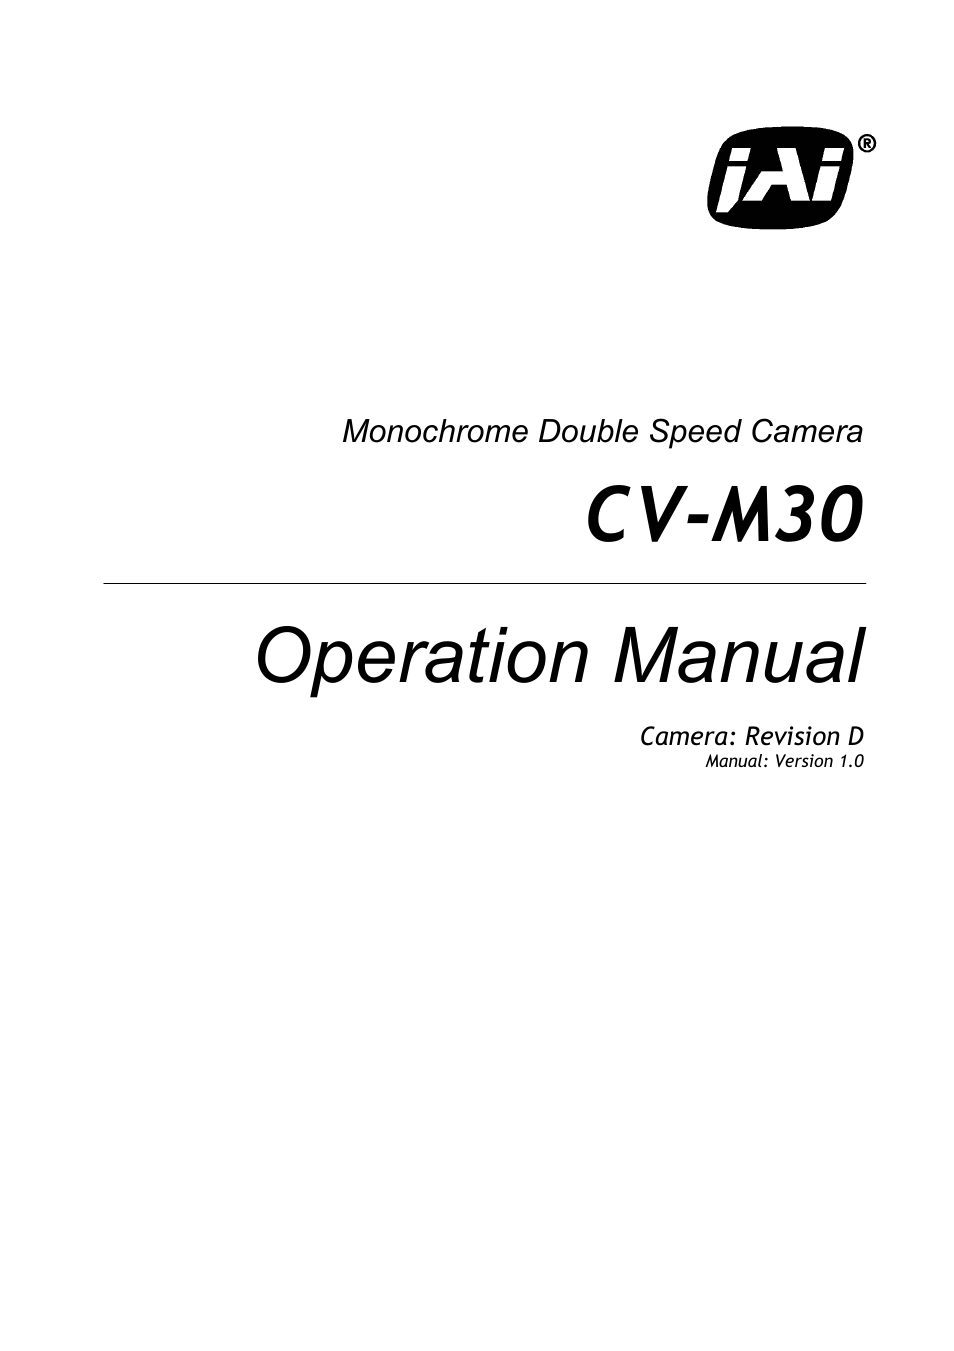 CV-M30